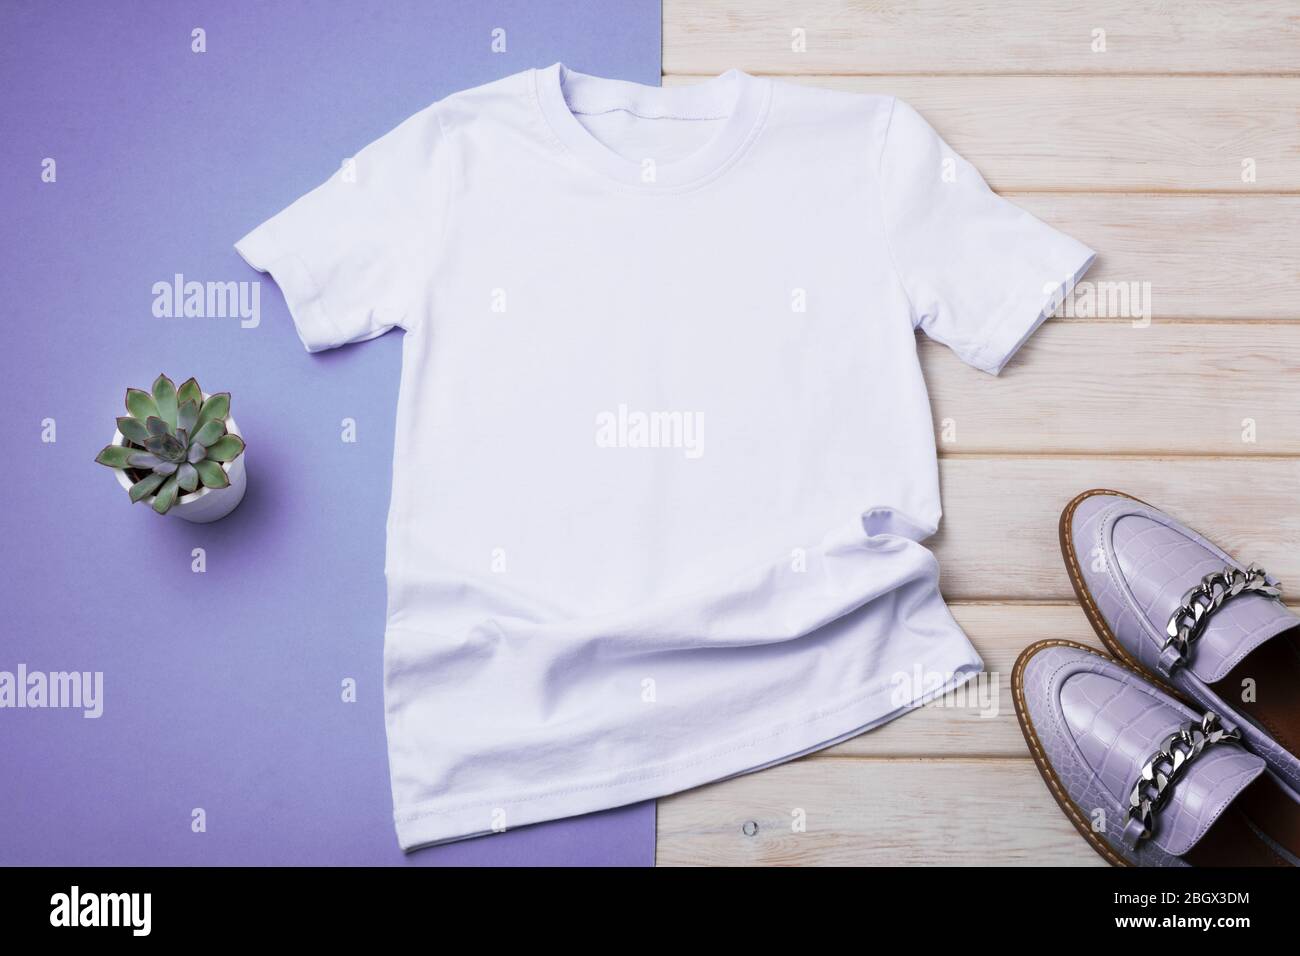 Camiseta blanca de algodón para mujer con mocasquín de color púrpura y planta suculenta. Diseño camiseta plantilla, estampado de camiseta presentación efecto doble Foto de stock